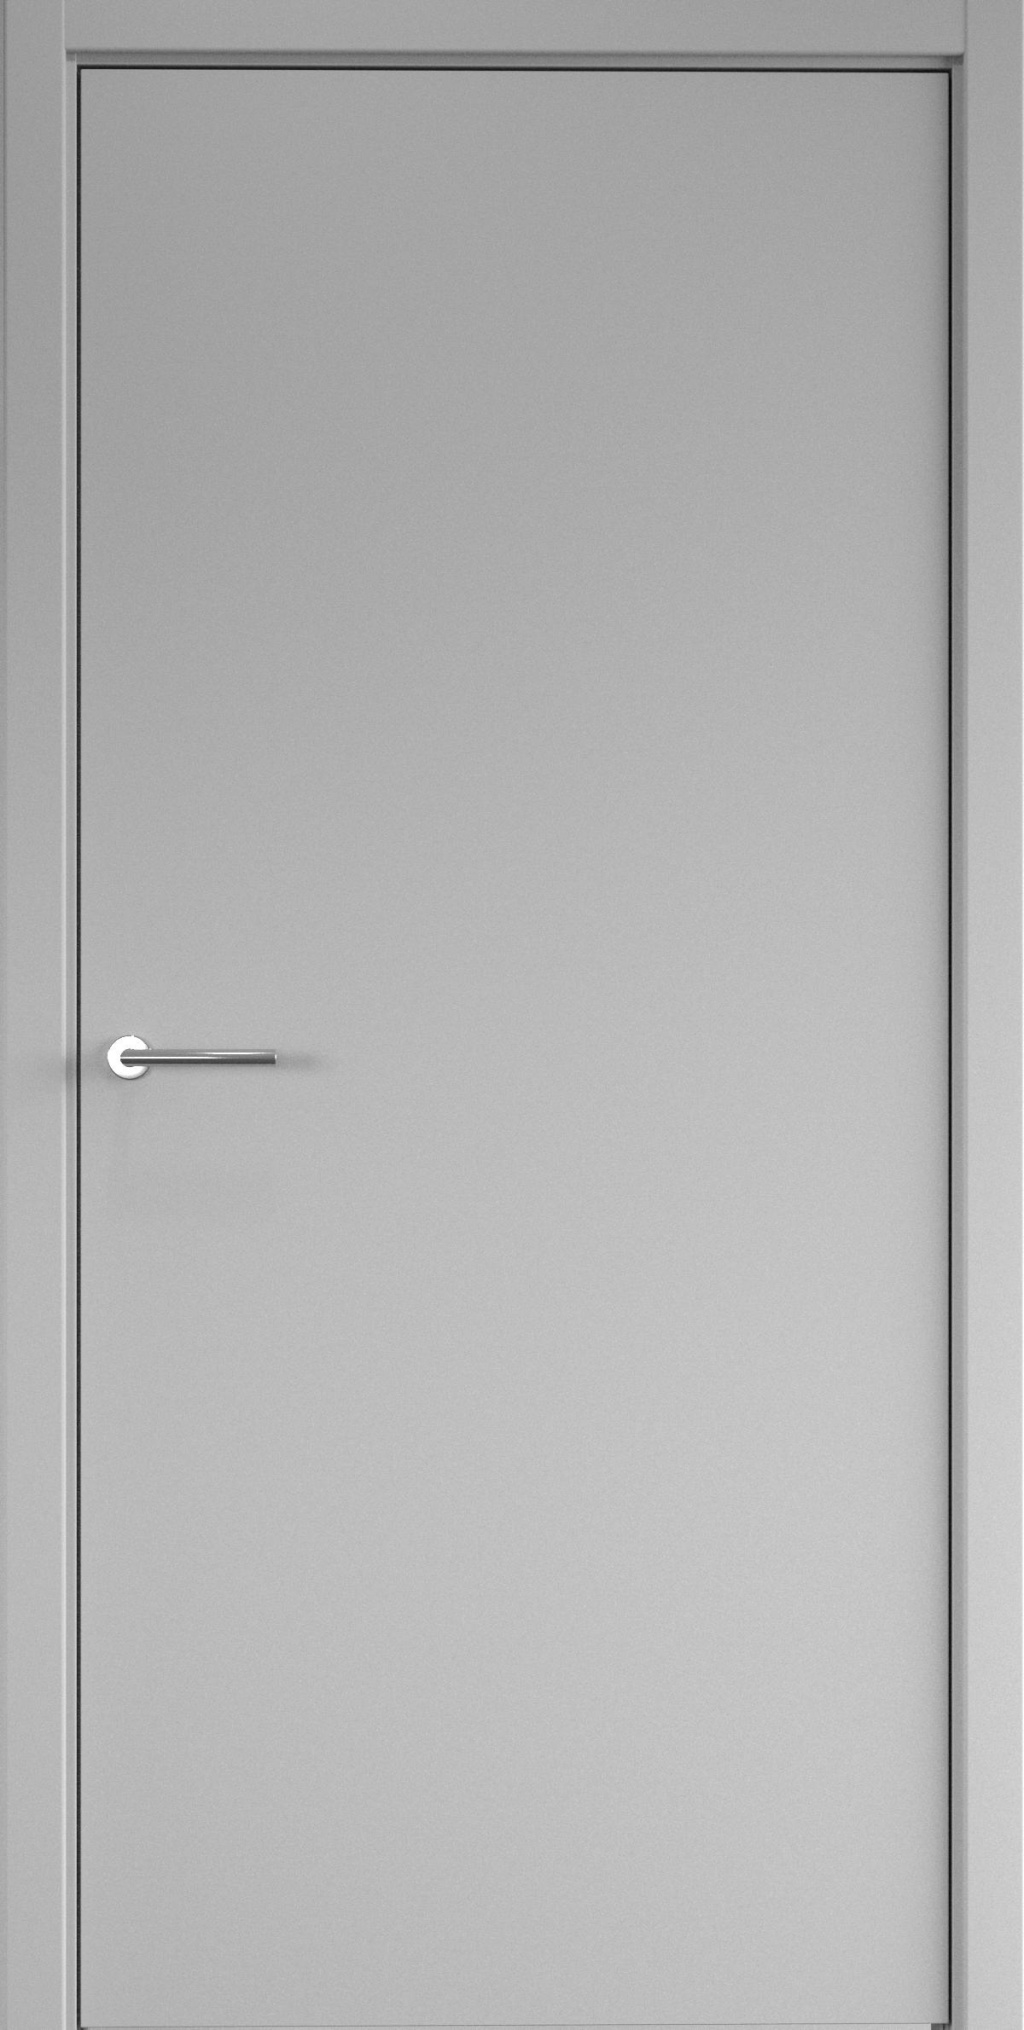 Albero Межкомнатная дверь Геометрия-1 магнитный замок в комплекте, арт. 20136 - фото №1